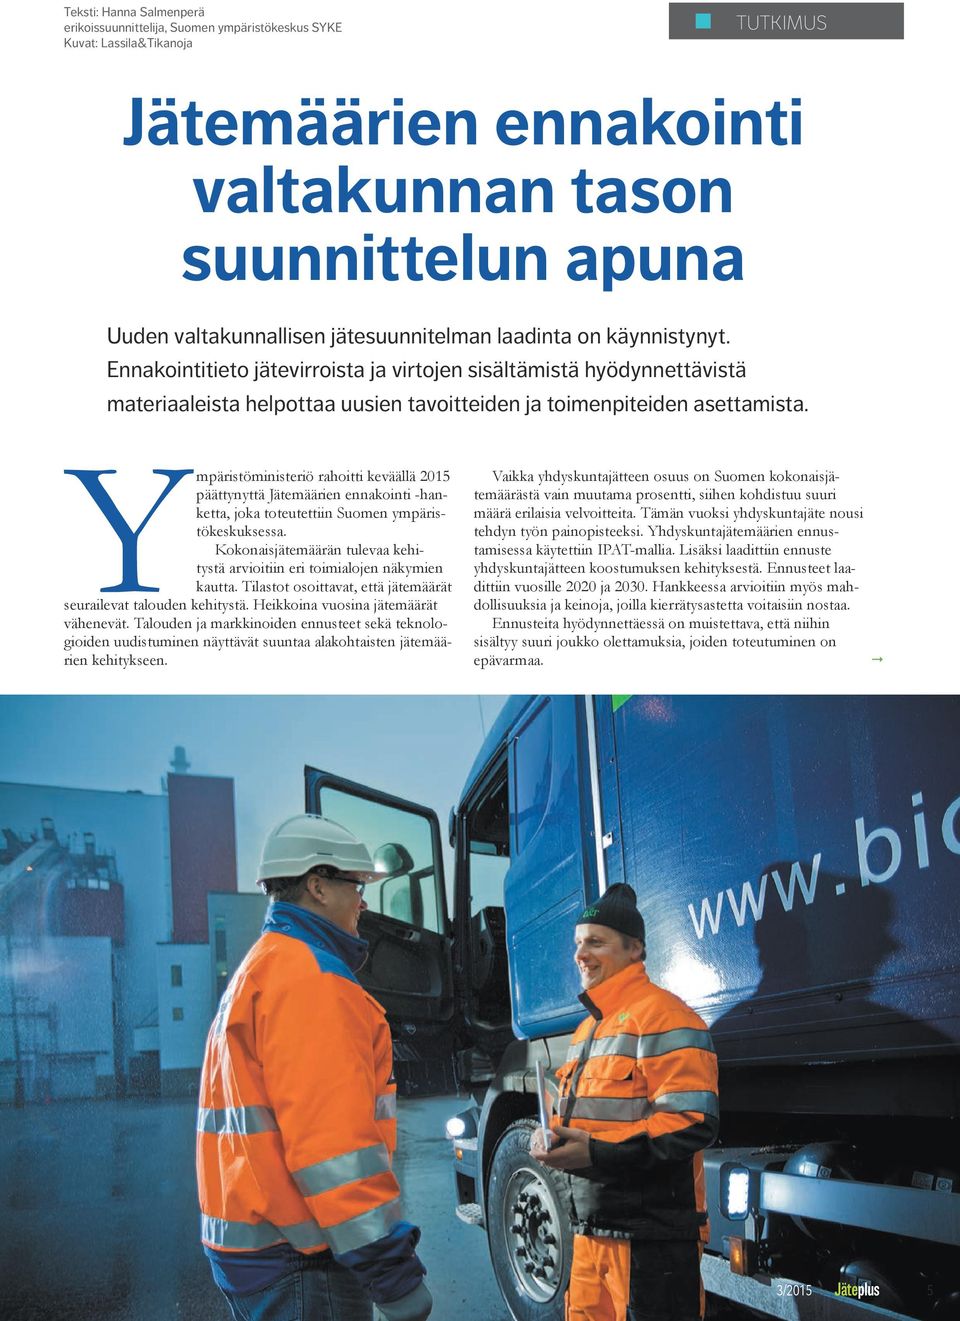 Ympäristöministeriö rahoitti keväällä 2015 päättynyttä Jätemäärien ennakointi -hanketta, joka toteutettiin Suomen ympäristökeskuksessa.